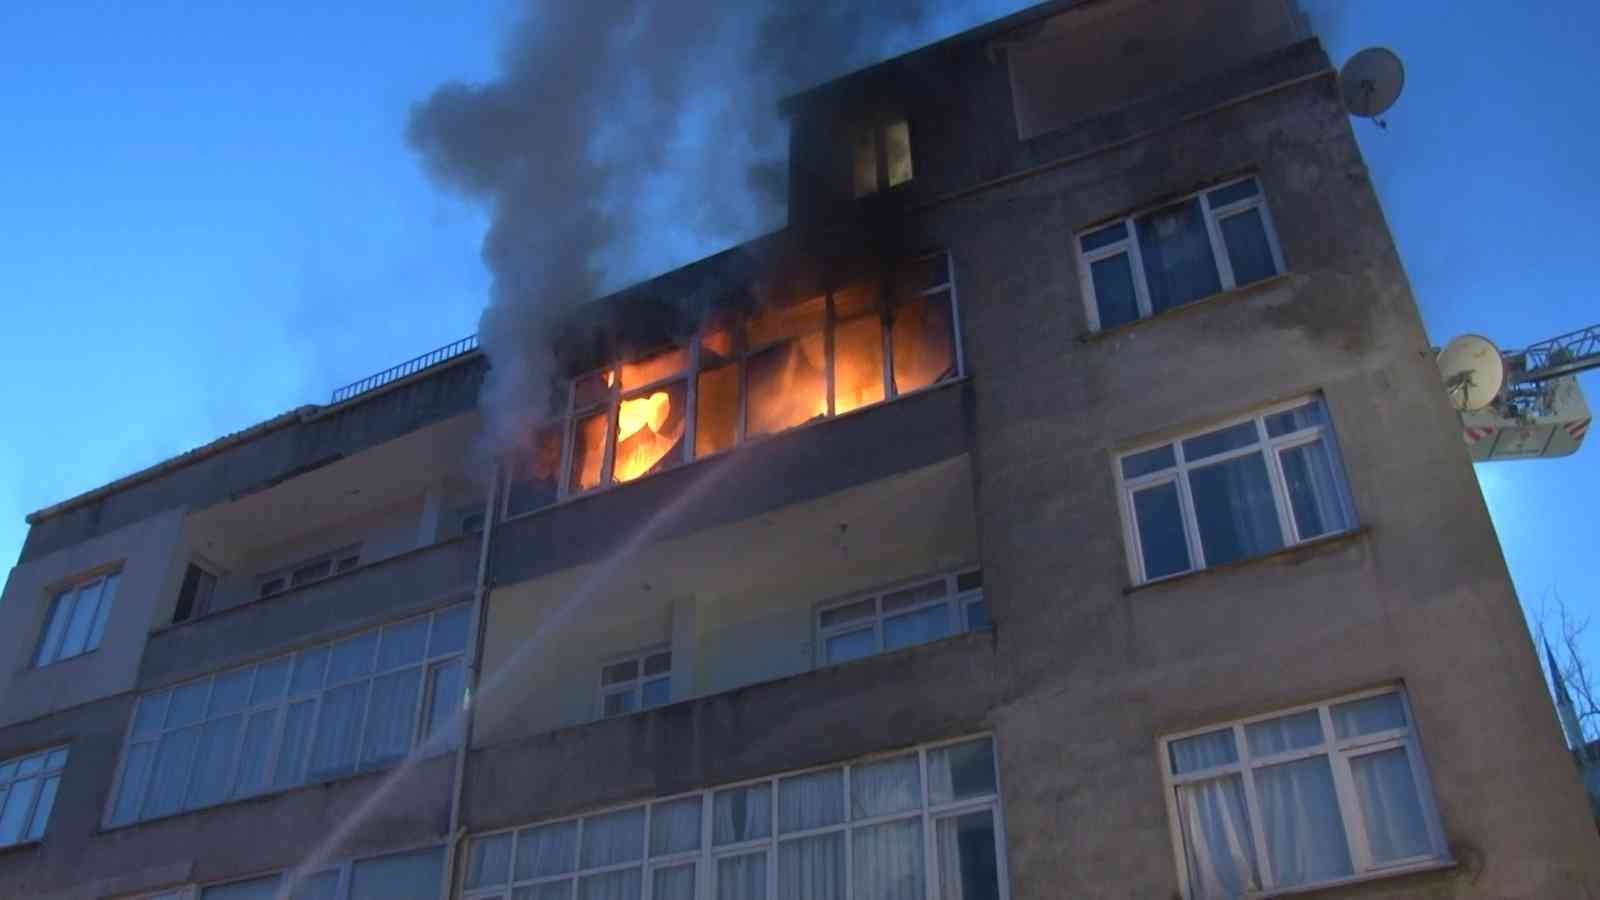 Maltepe’de bir apartman dairesinde yangın çıktı. Alevlere teslim olan dairede yaşayan 3 kişiyi itfaiye ekipleri kurtardı. Olay yerine gelen bazı ...